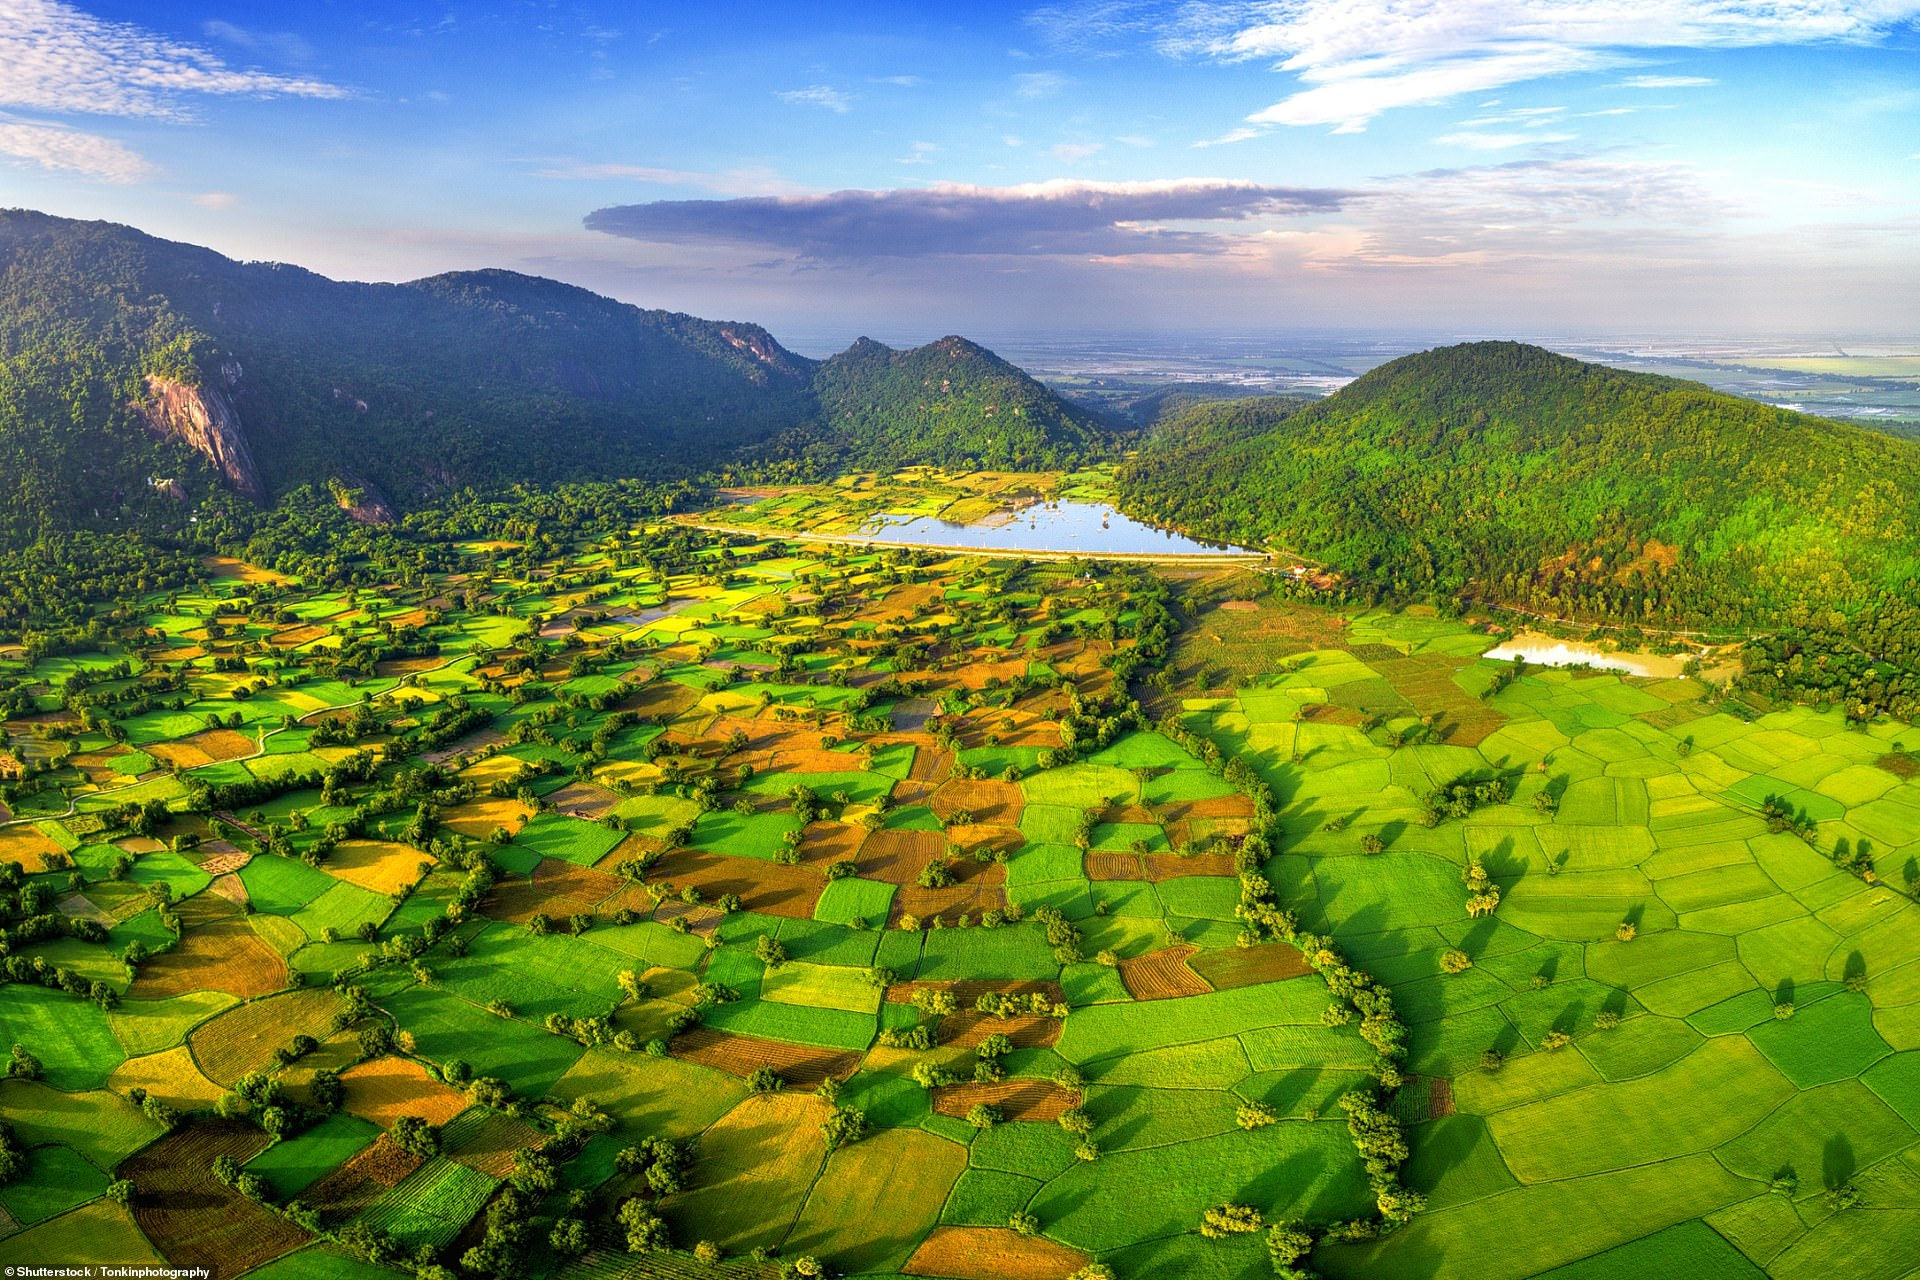 Những cánh đồng lúa ở thị trấn Tri Tôn, huyện Tri Tôn, tỉnh An Giang, “bát cơm vàng” của Việt Nam. Nhìn từ trên cao, cả khu vực như một “tấm chăn lúa” khổng lồ được chắp vá.